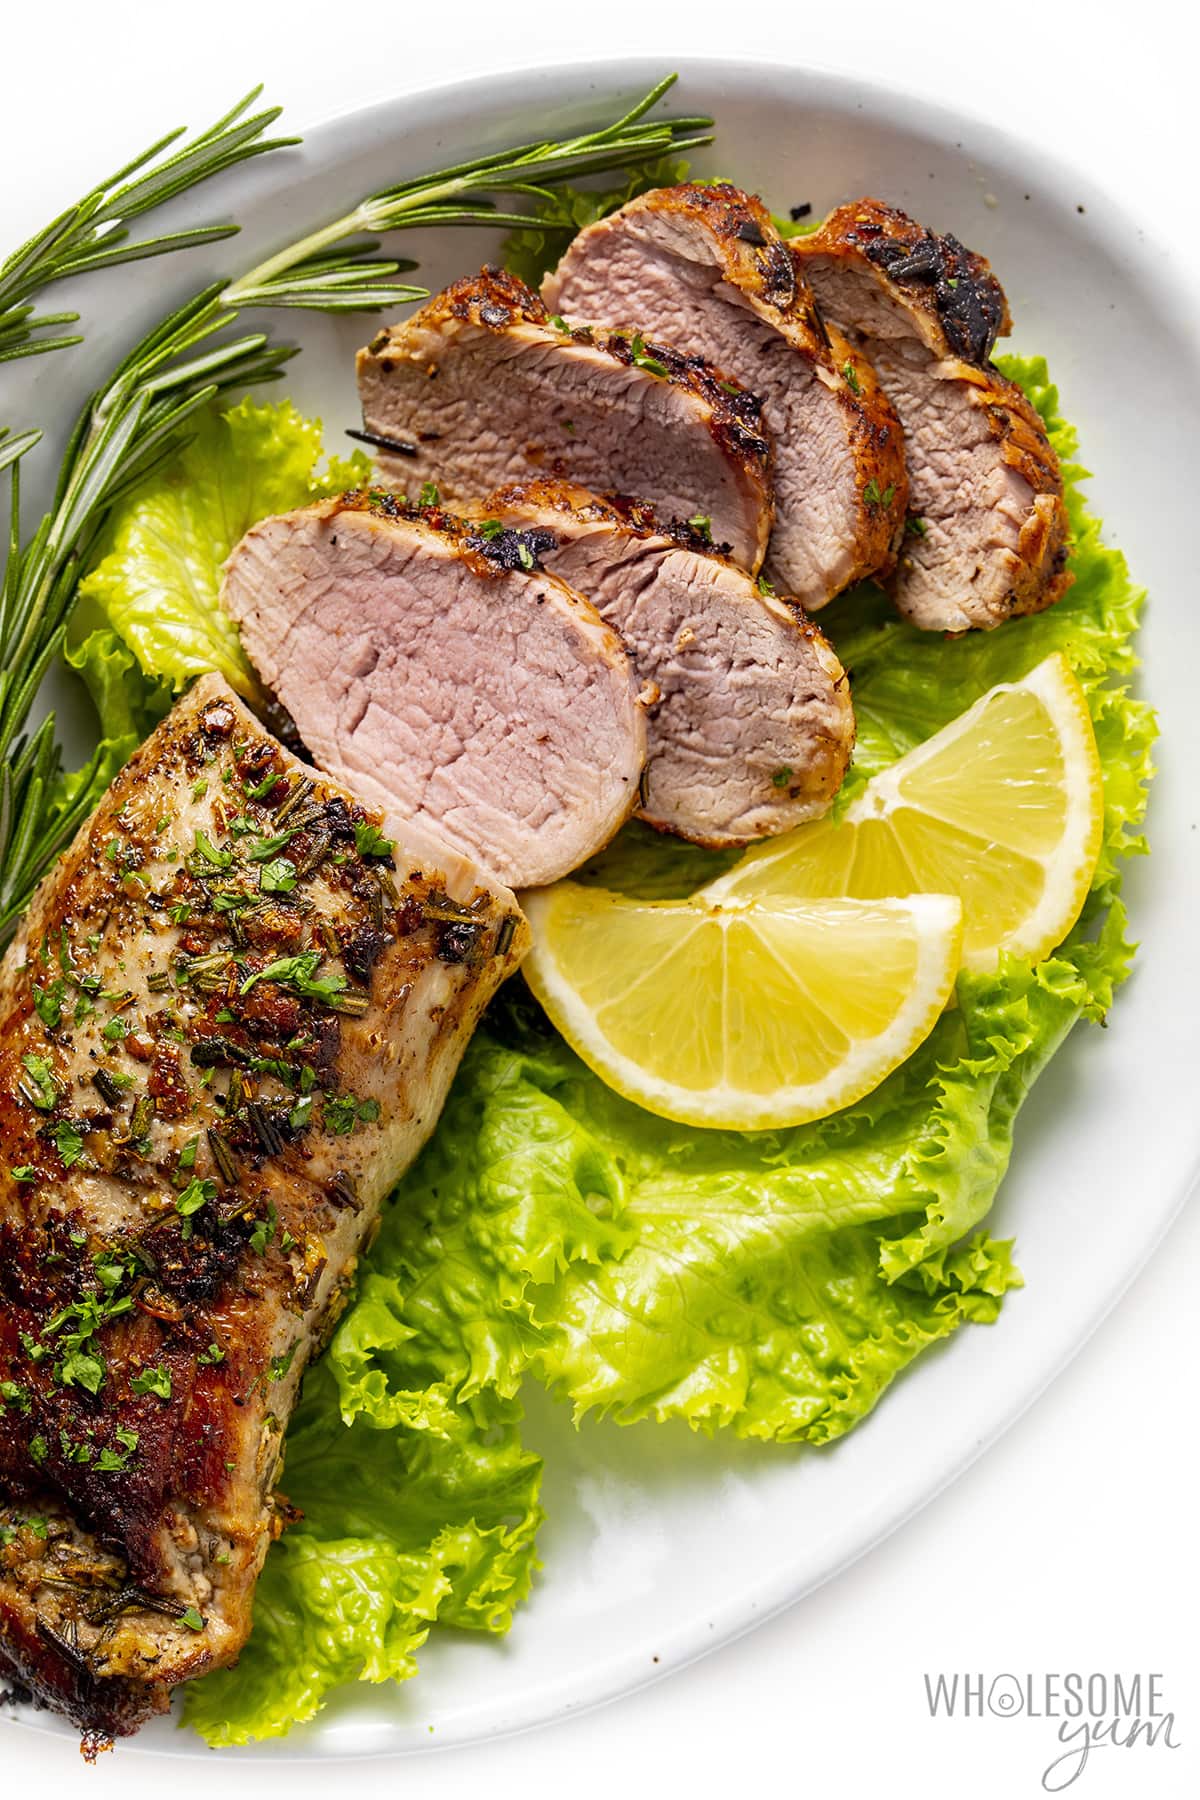 Pork tenderloin on a plate with lettuce and lemon slices. 